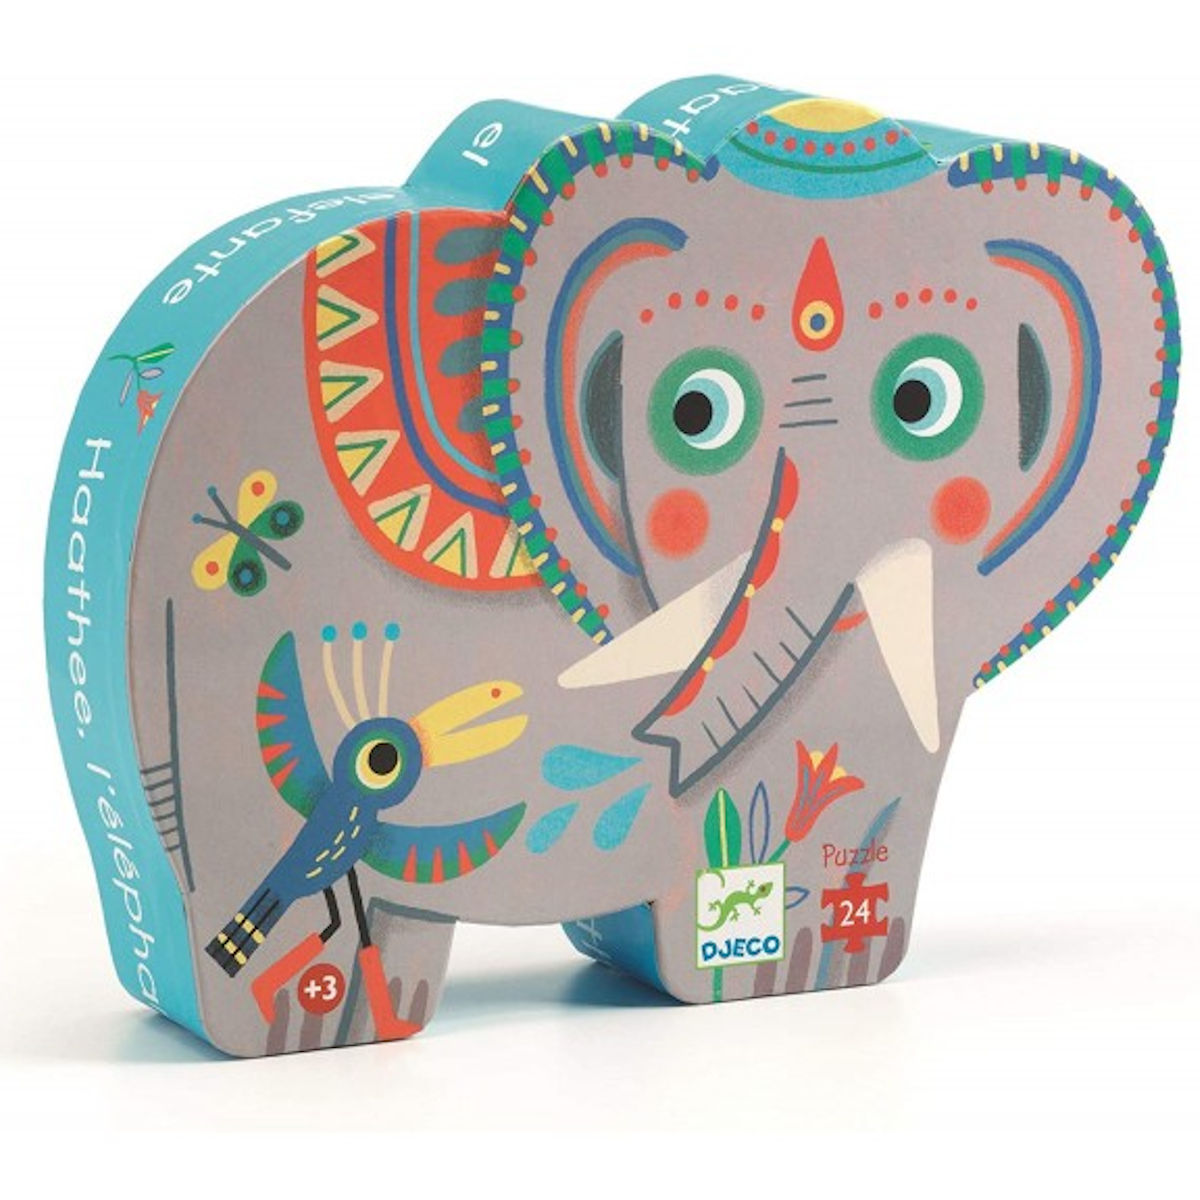 Haathee l'elefante - Puzzle 24 pezzi - Djeco